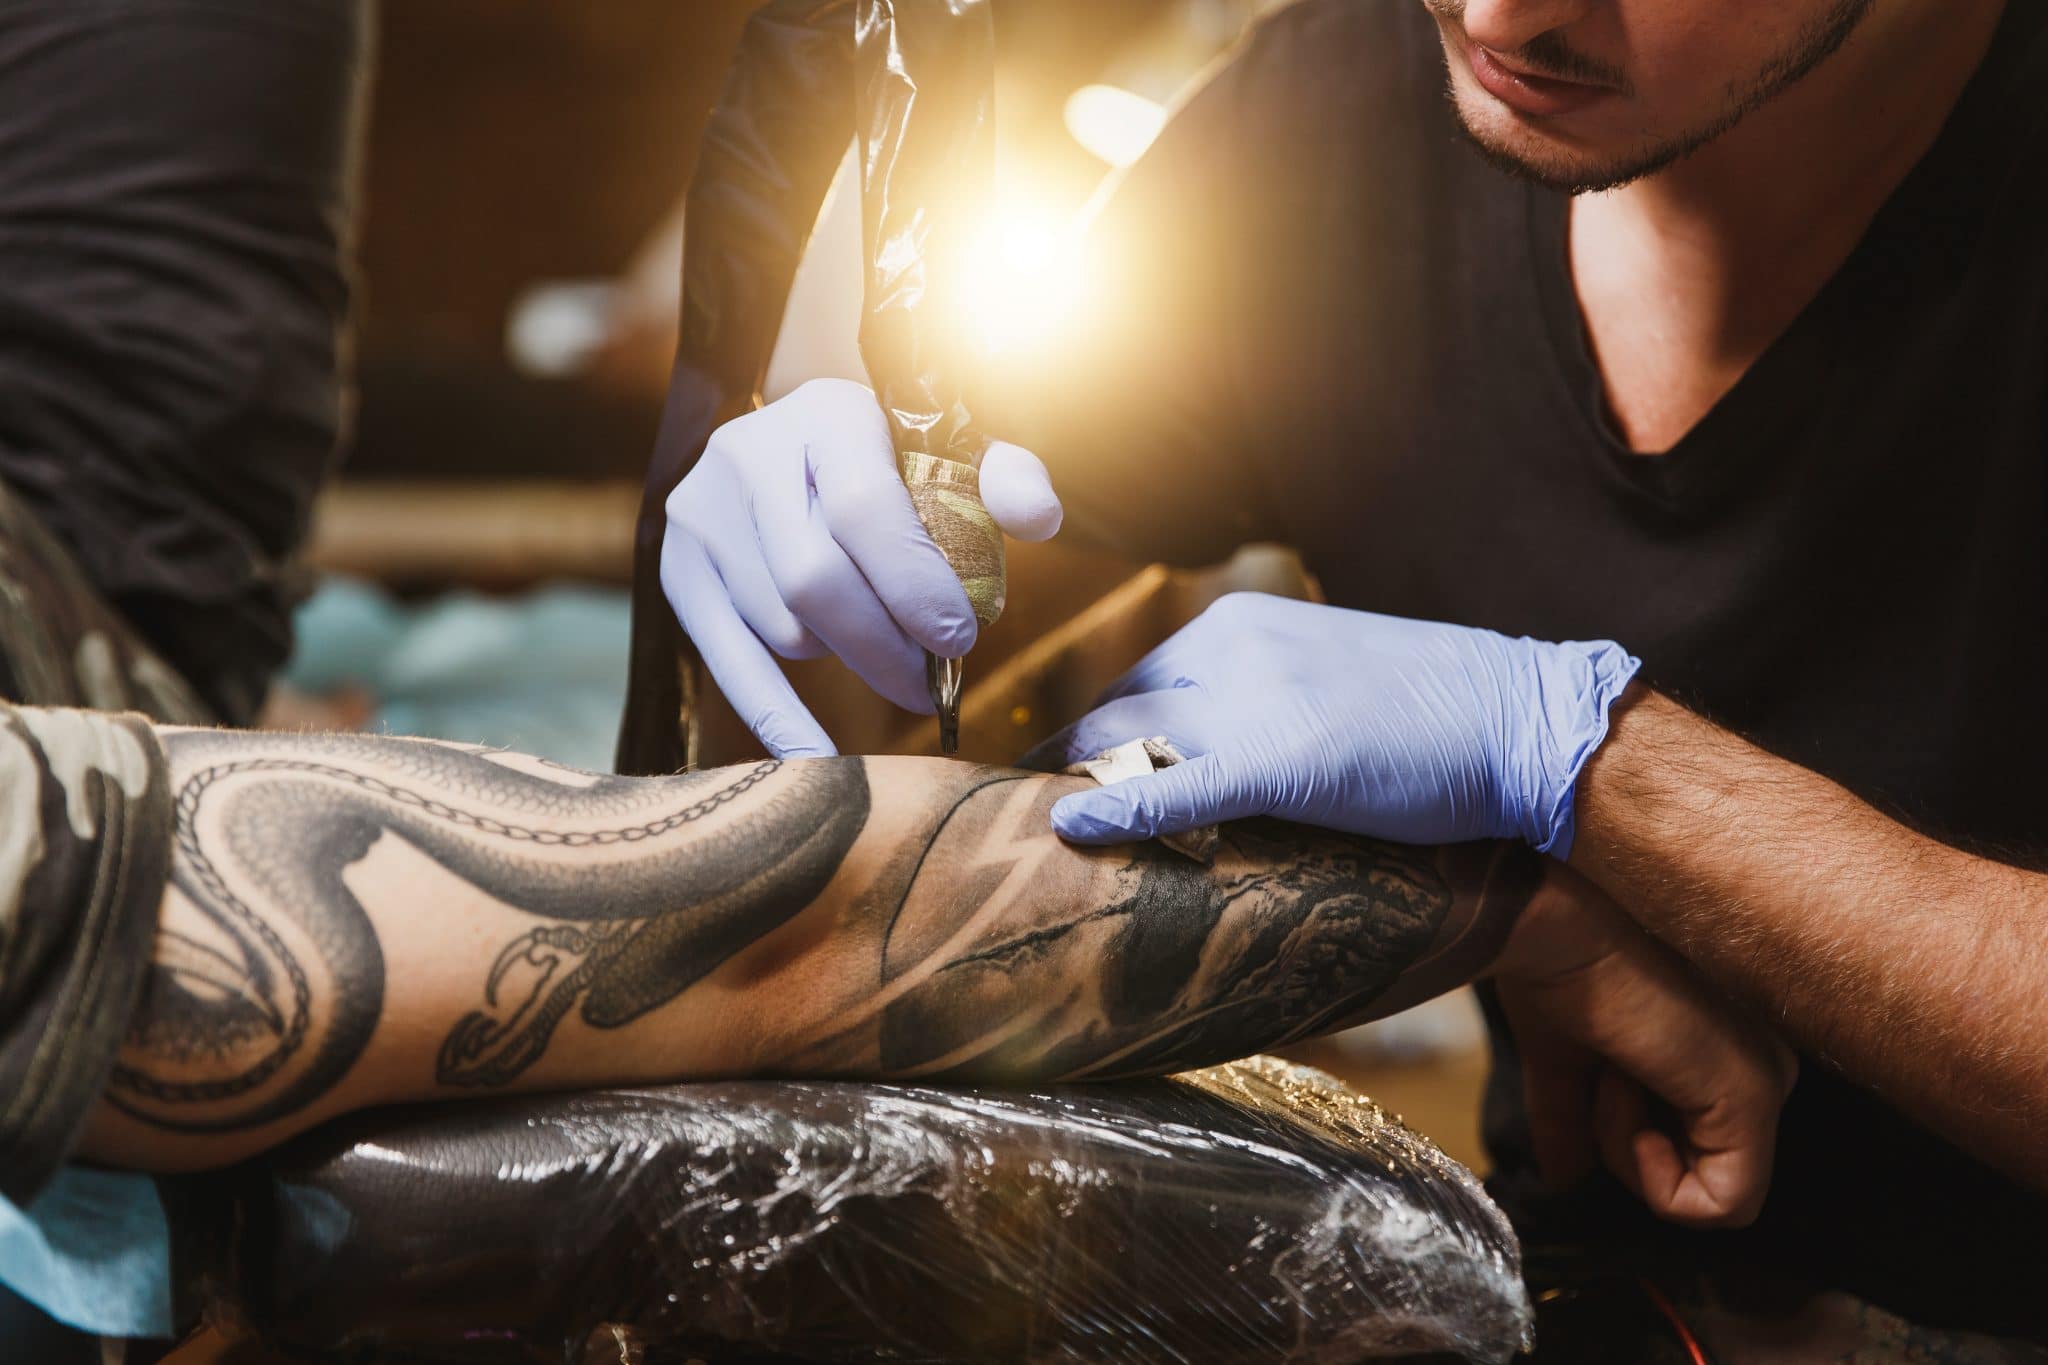 « Le tatouage m’a aidé à transcender la douleur »